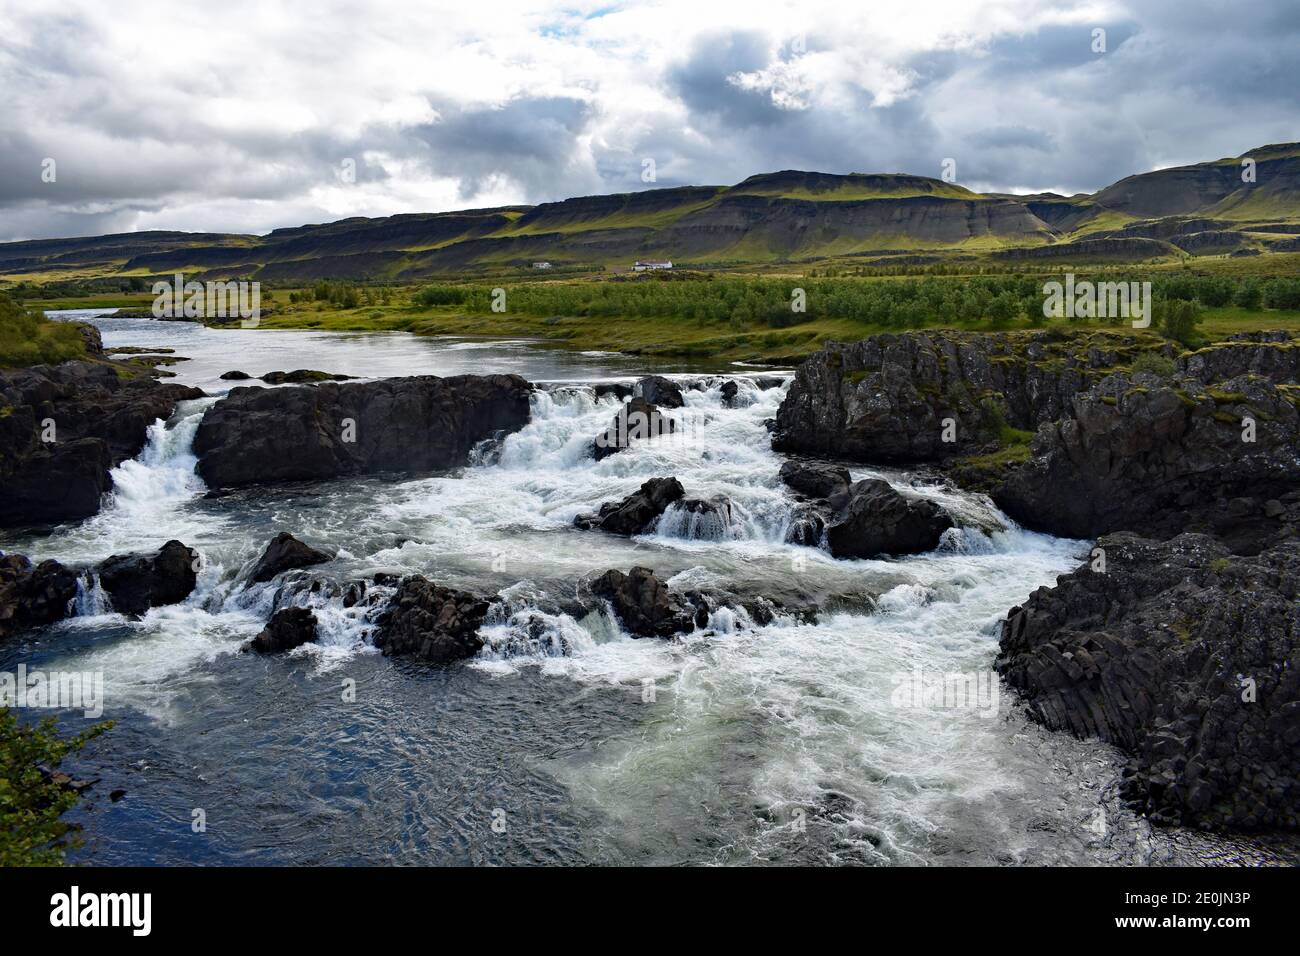 Cascate di Glanni sul fiume Norðurá nell'Islanda occidentale. Dalle rive del fiume si ergono flussi d'acqua sulla roccia lavica nera e le montagne. Foto Stock